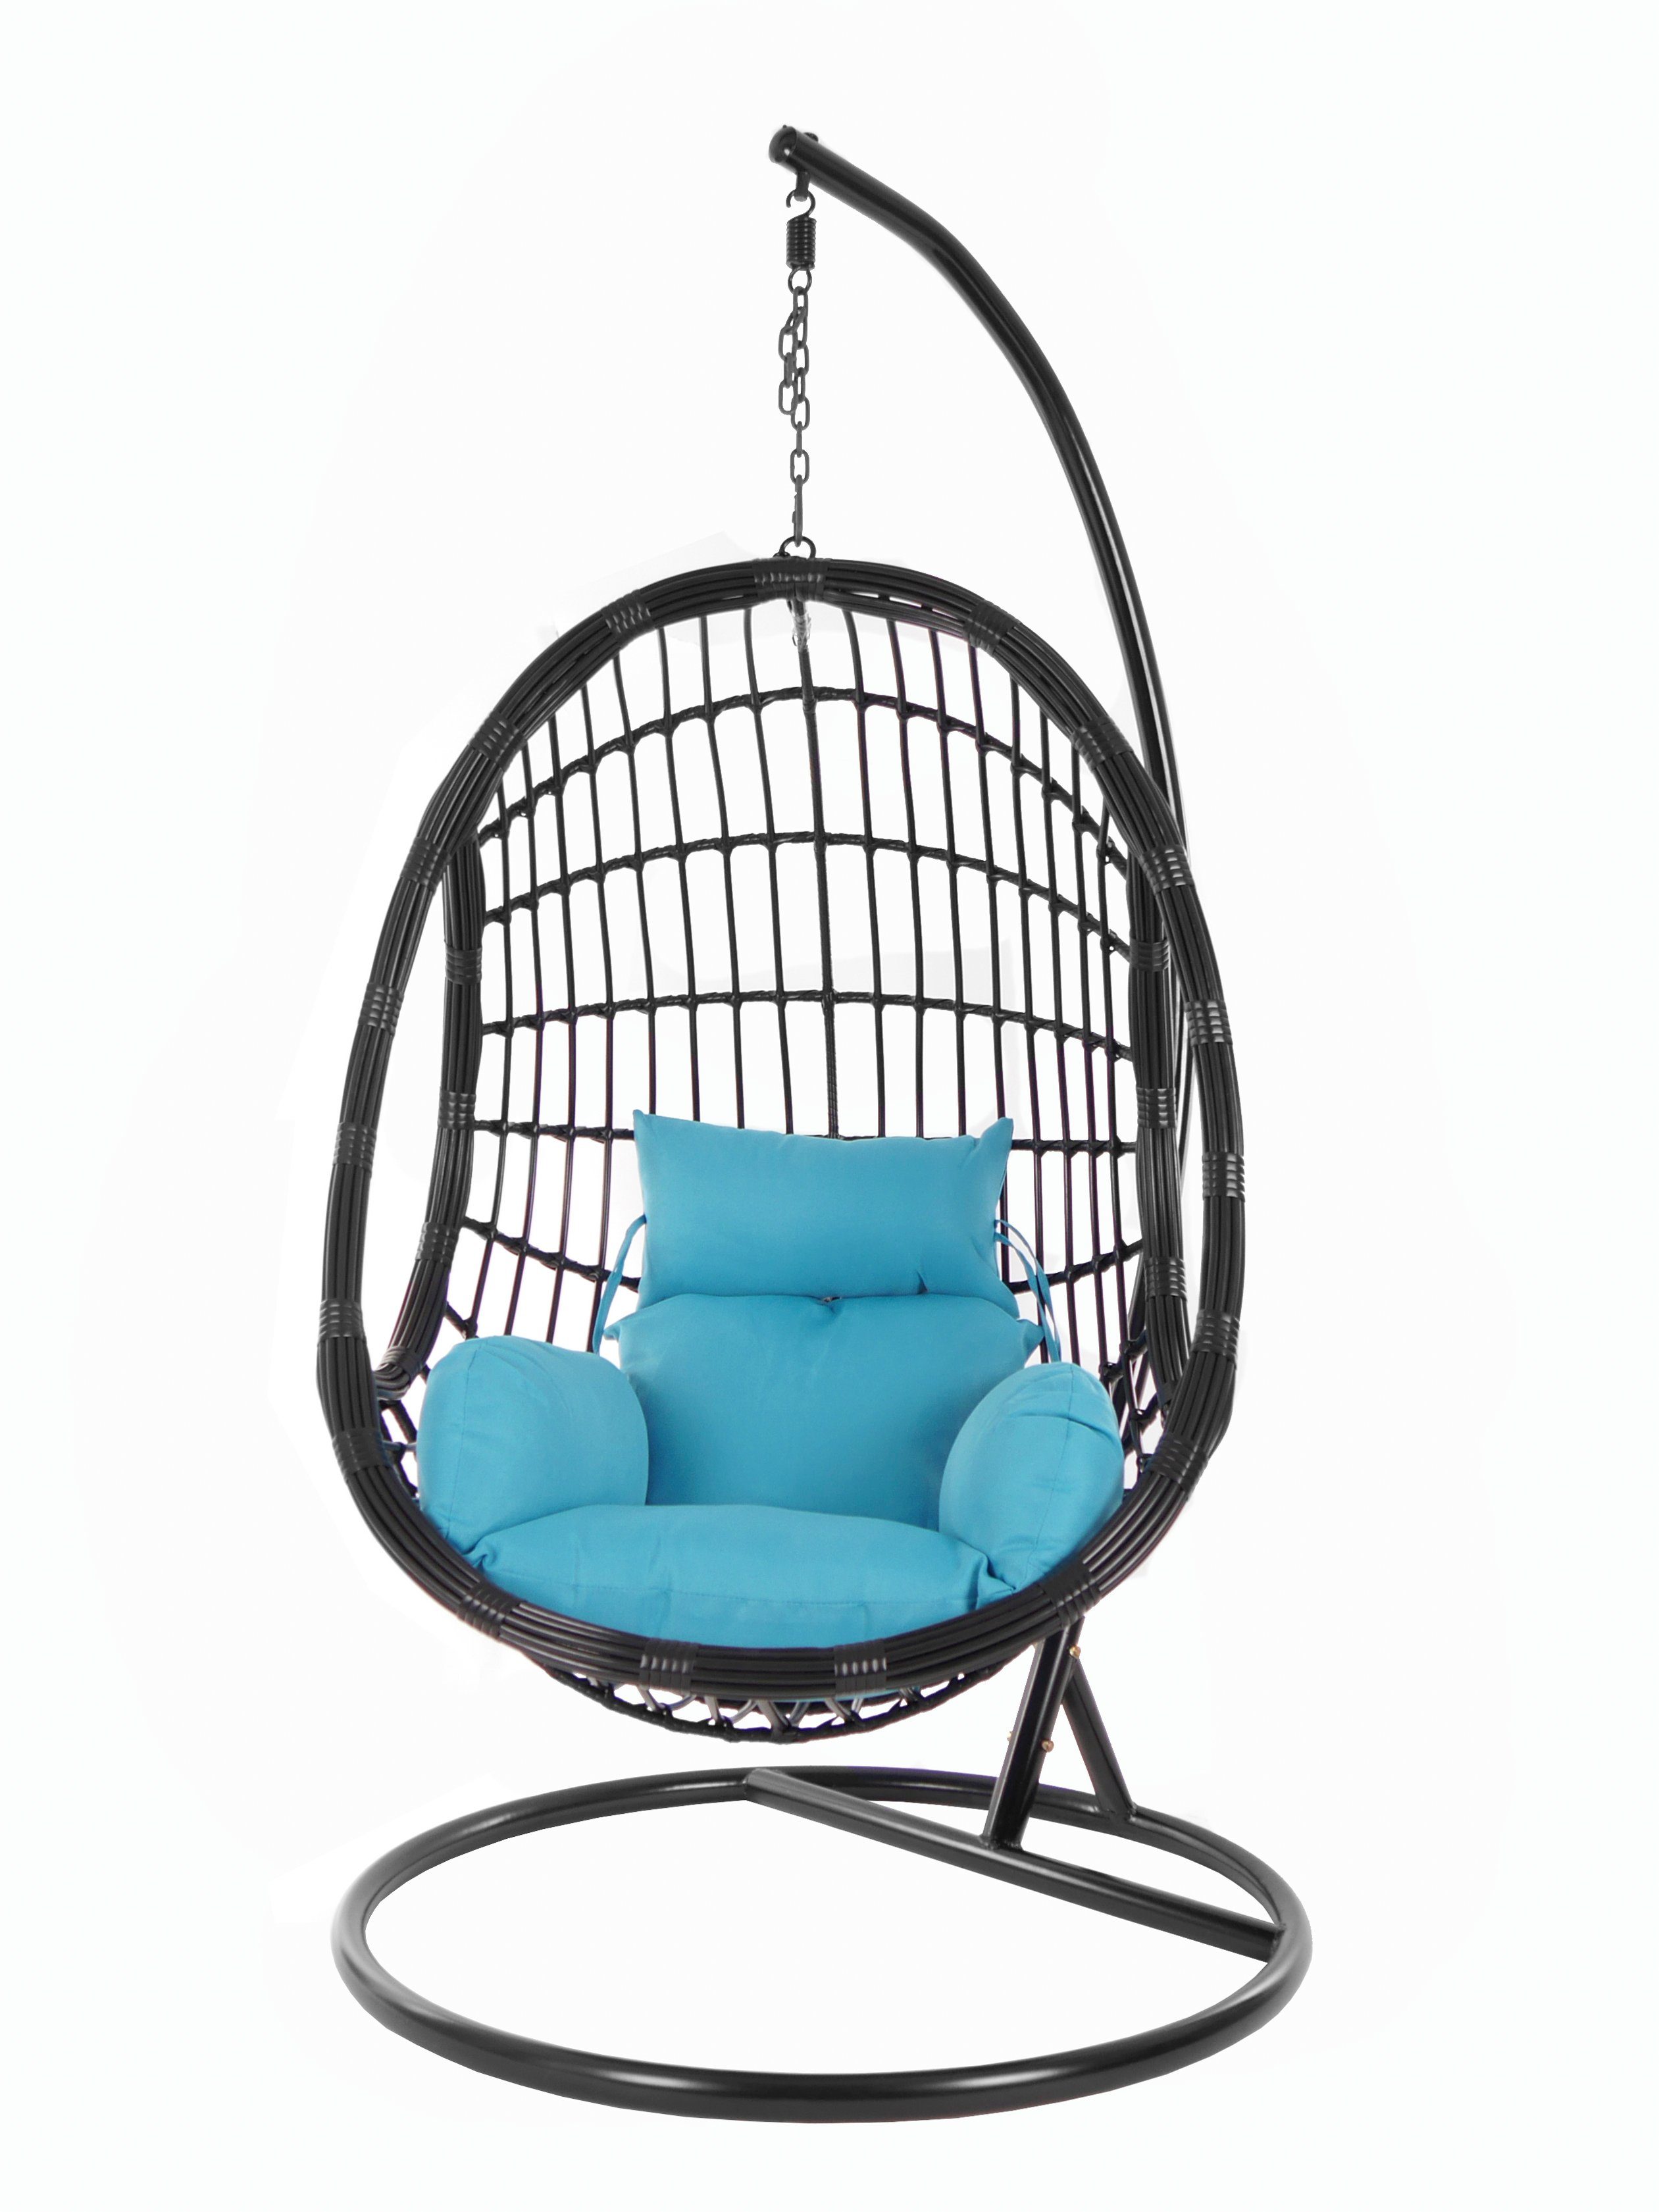 KIDEO Hängesessel »PALMANOVA black«, Schwebesessel, Swing Chair,  Hängesessel mit Gestell und Kissen, Nest-Kissen